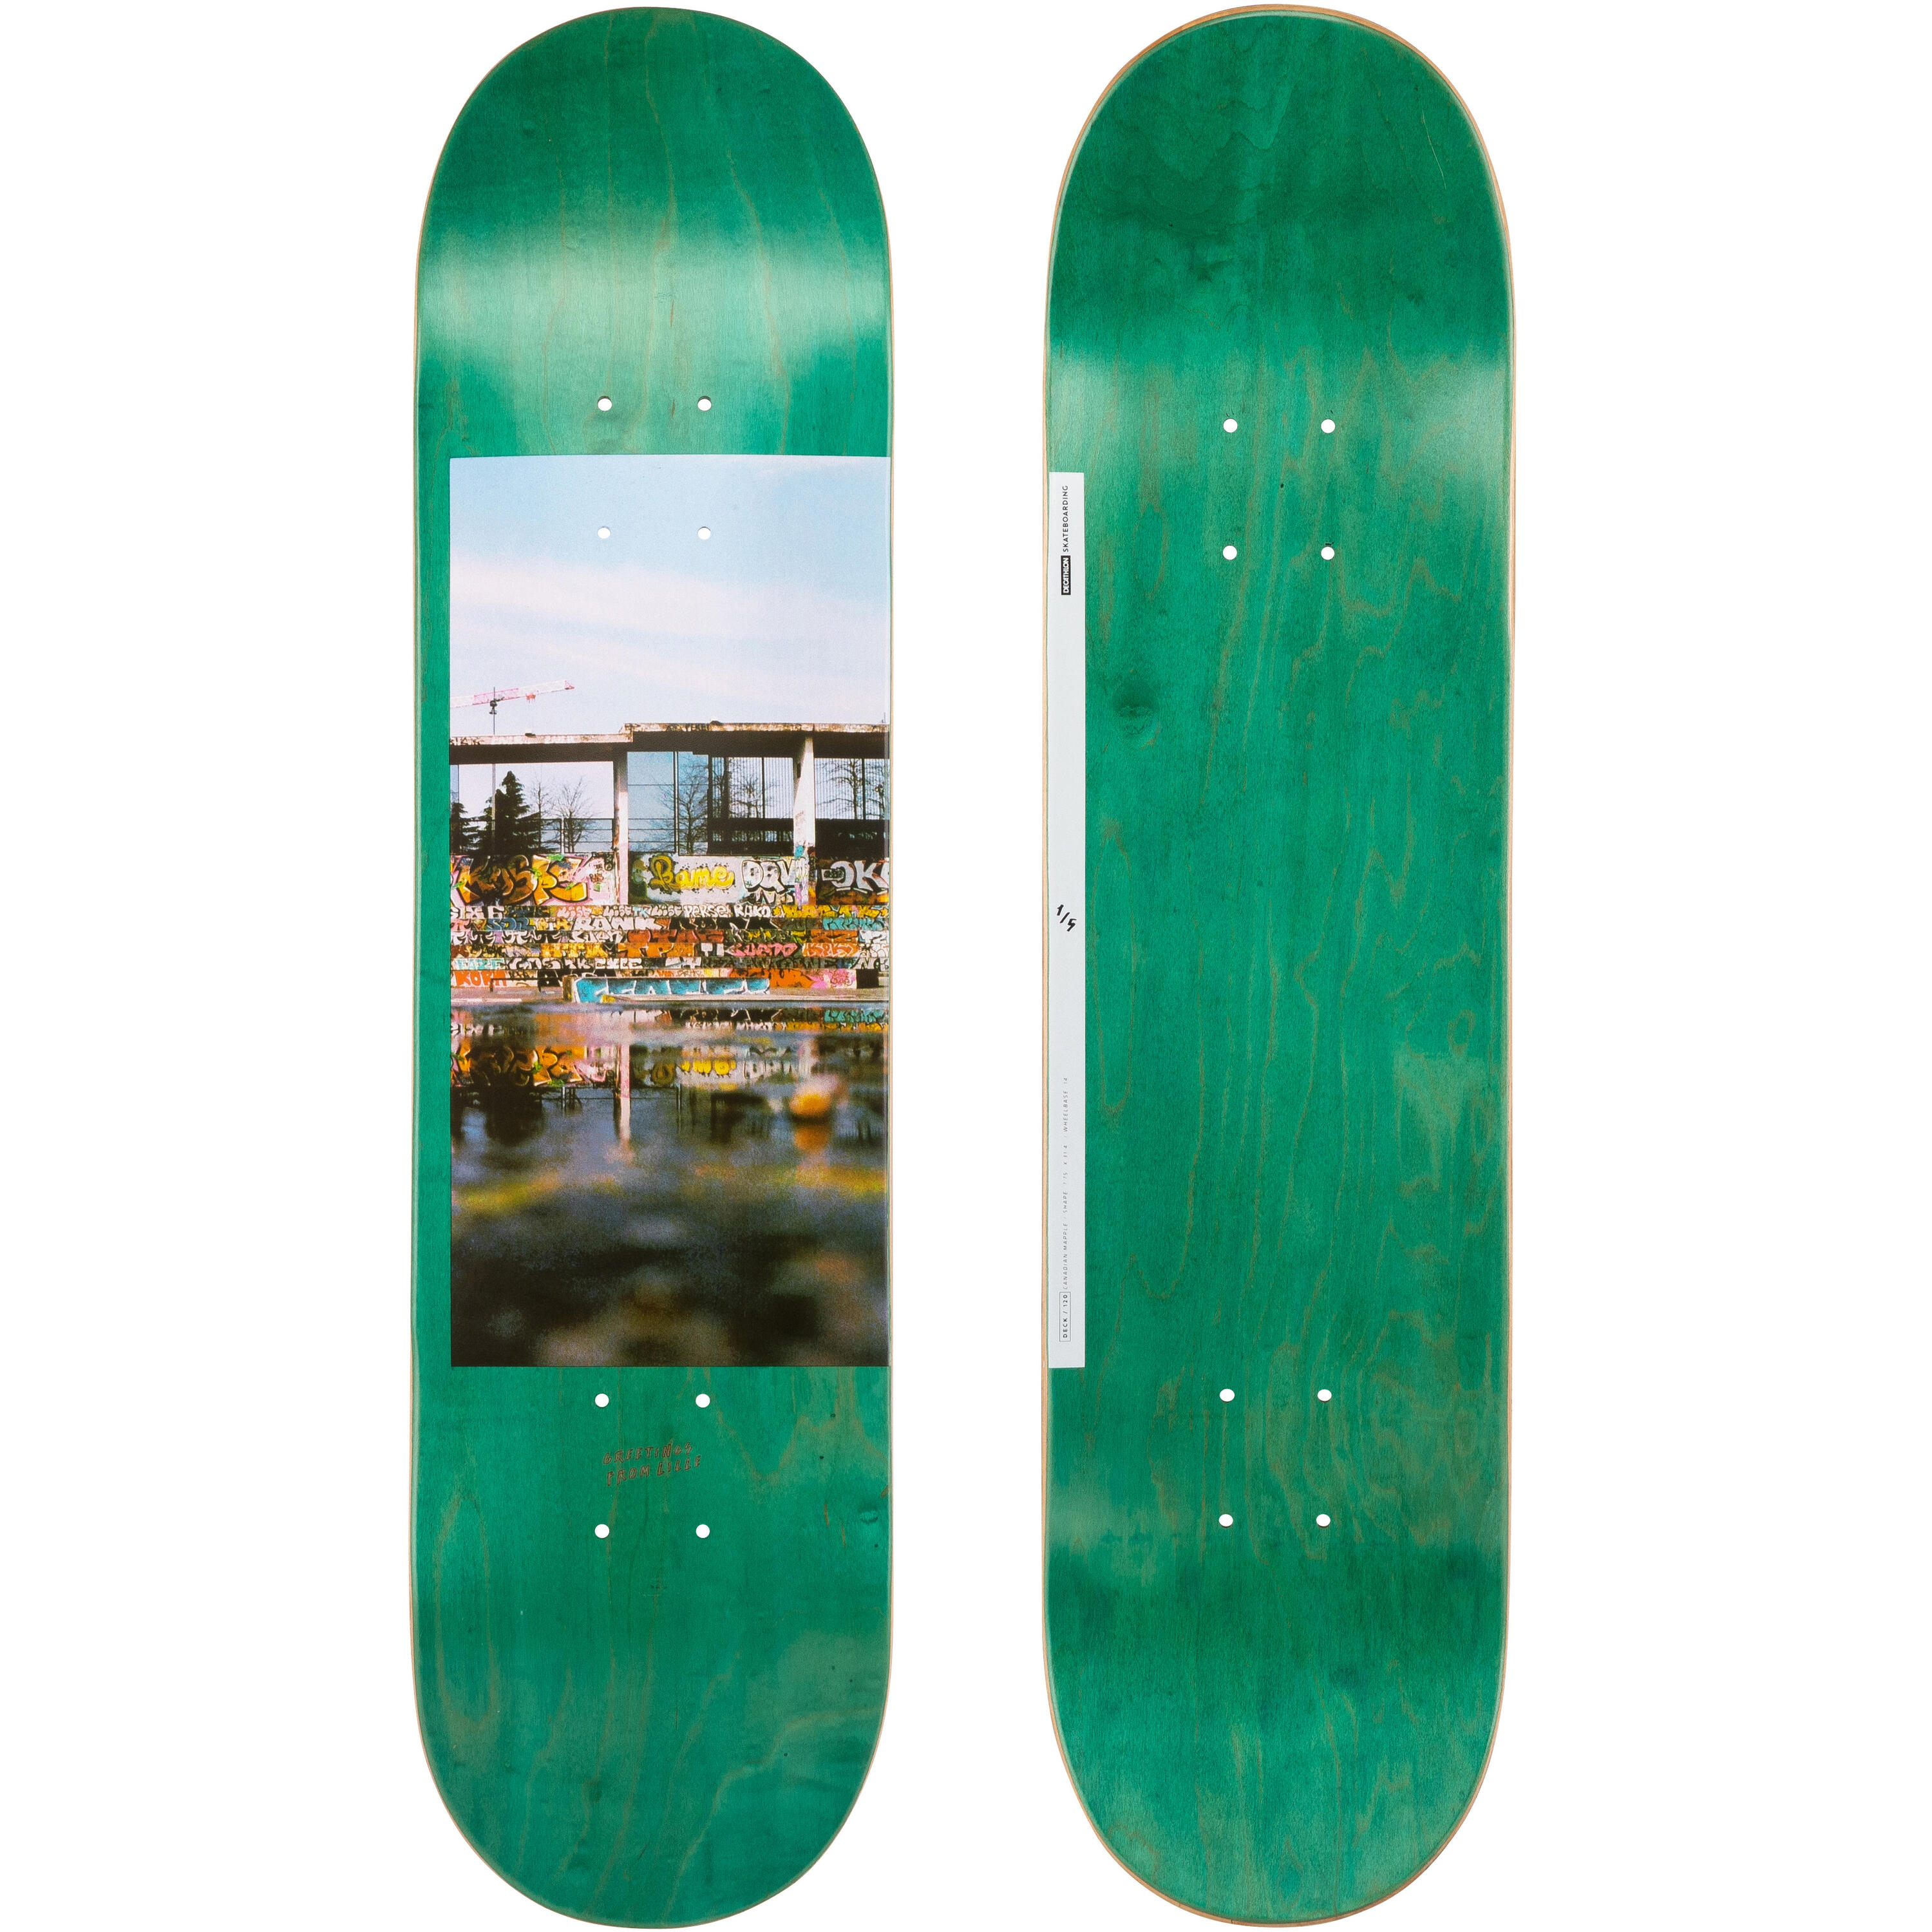 OXELO Maple Skateboard Deck Greetings DK120 7.75" - Green